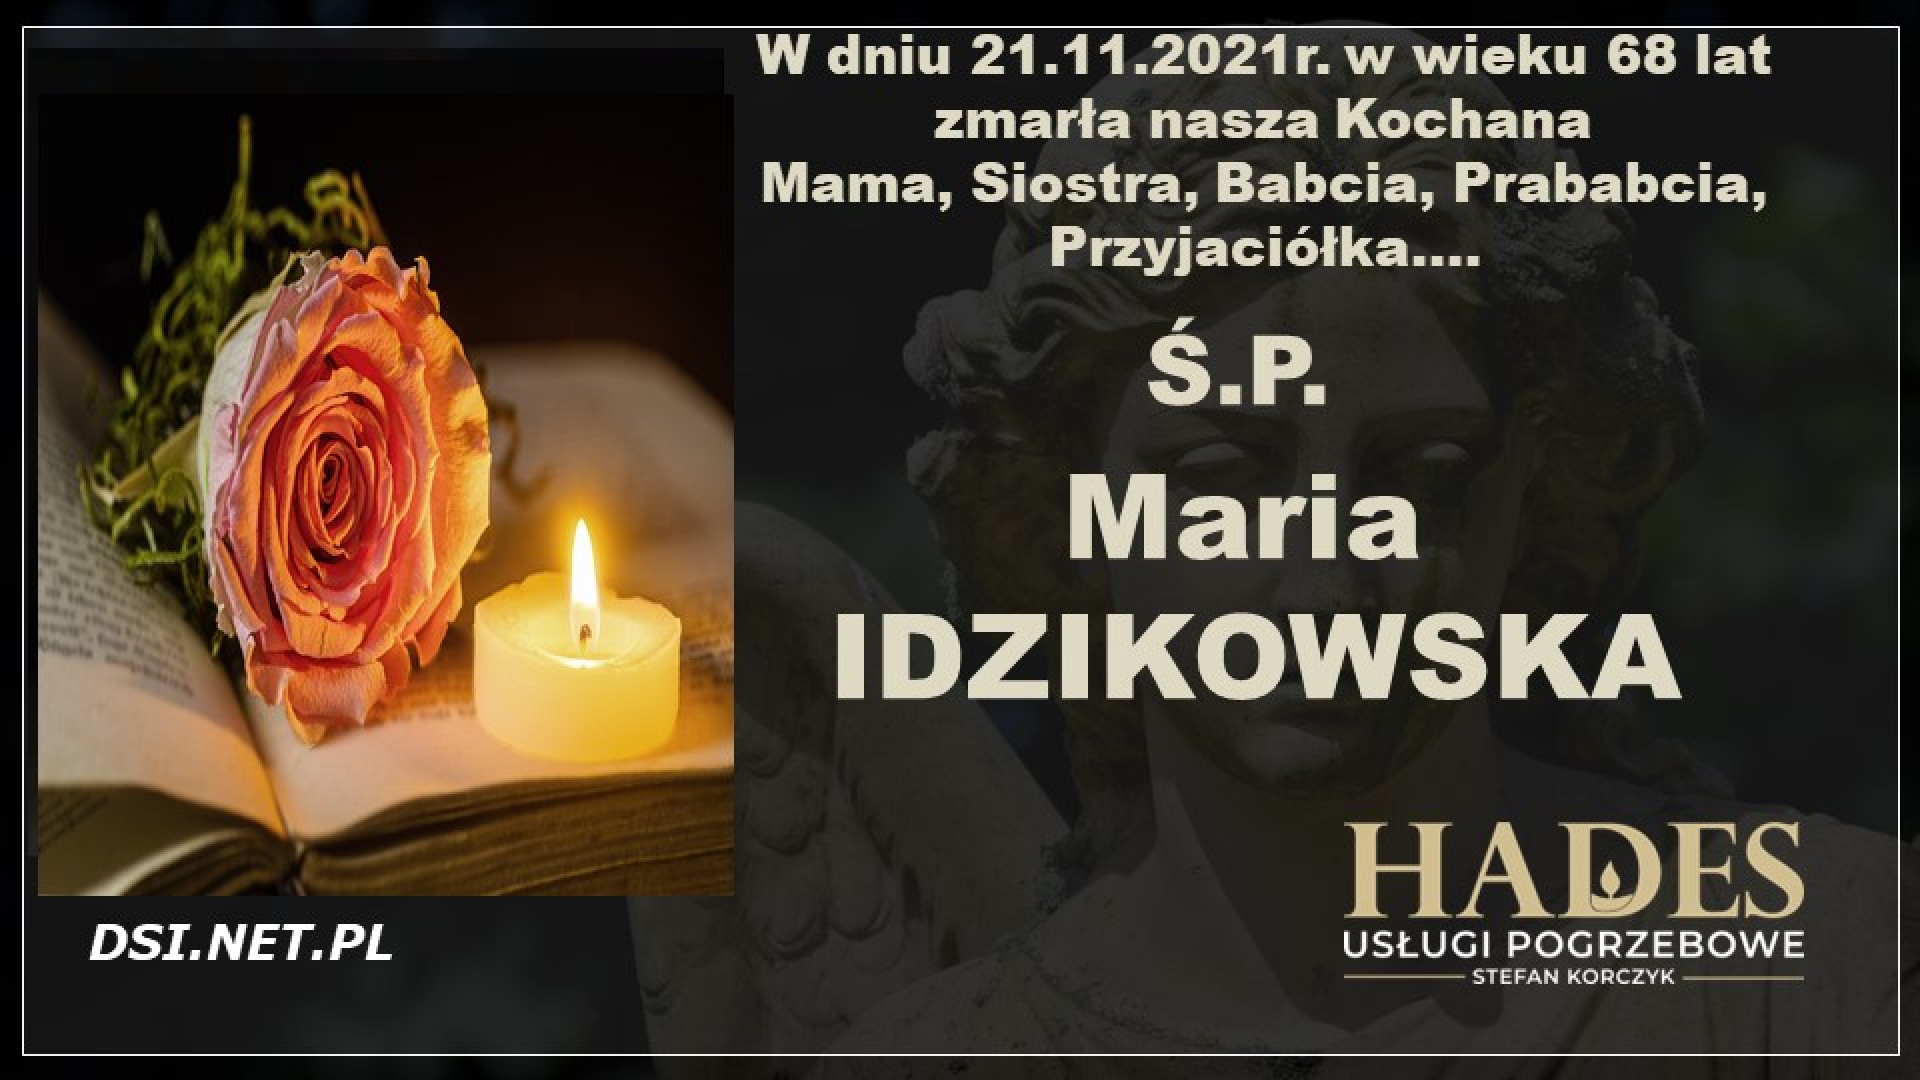 Ś.P. Maria Idzikowska